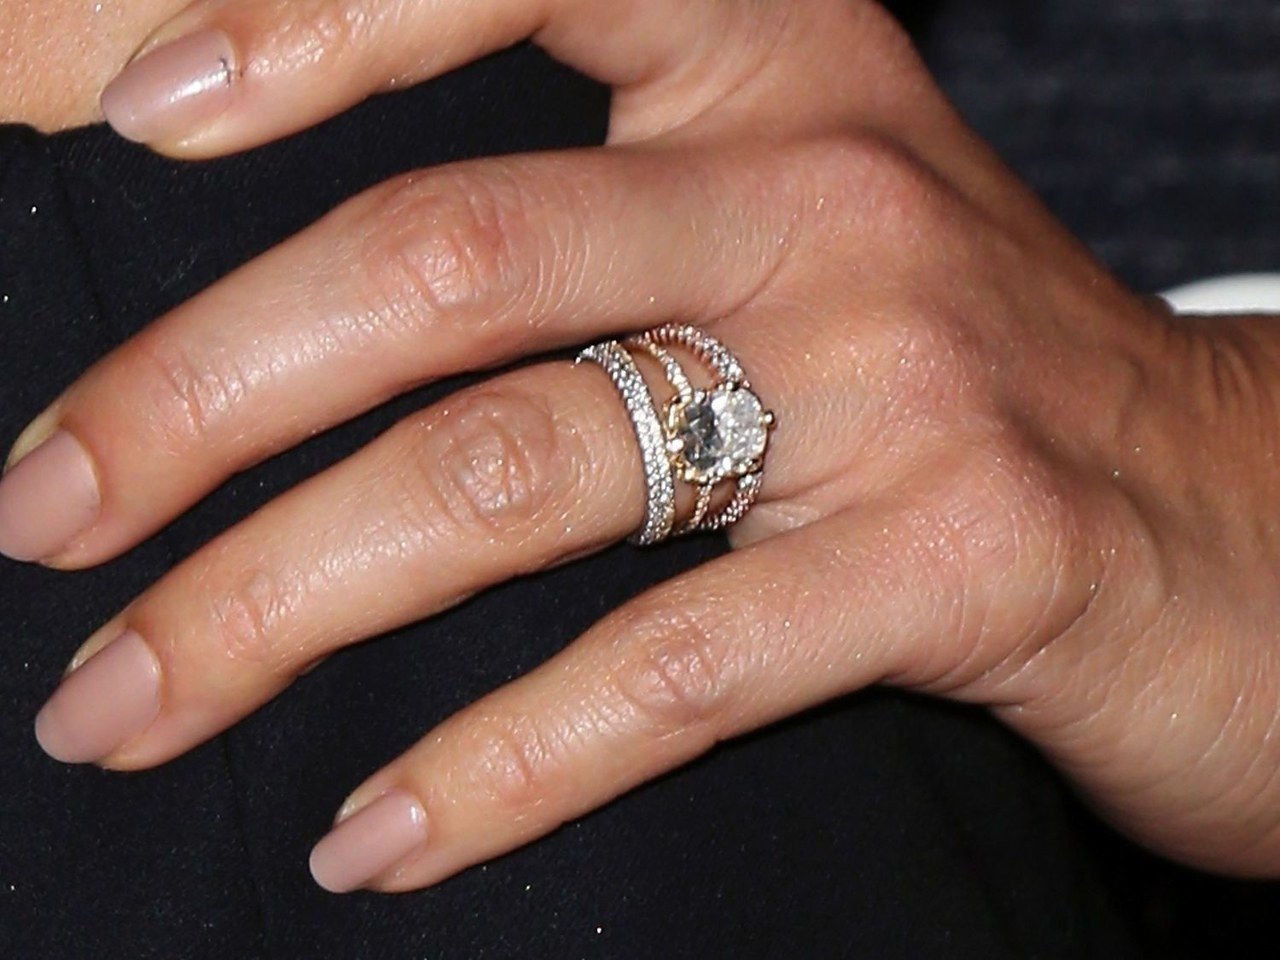 Помолвочное кольцо на пальце